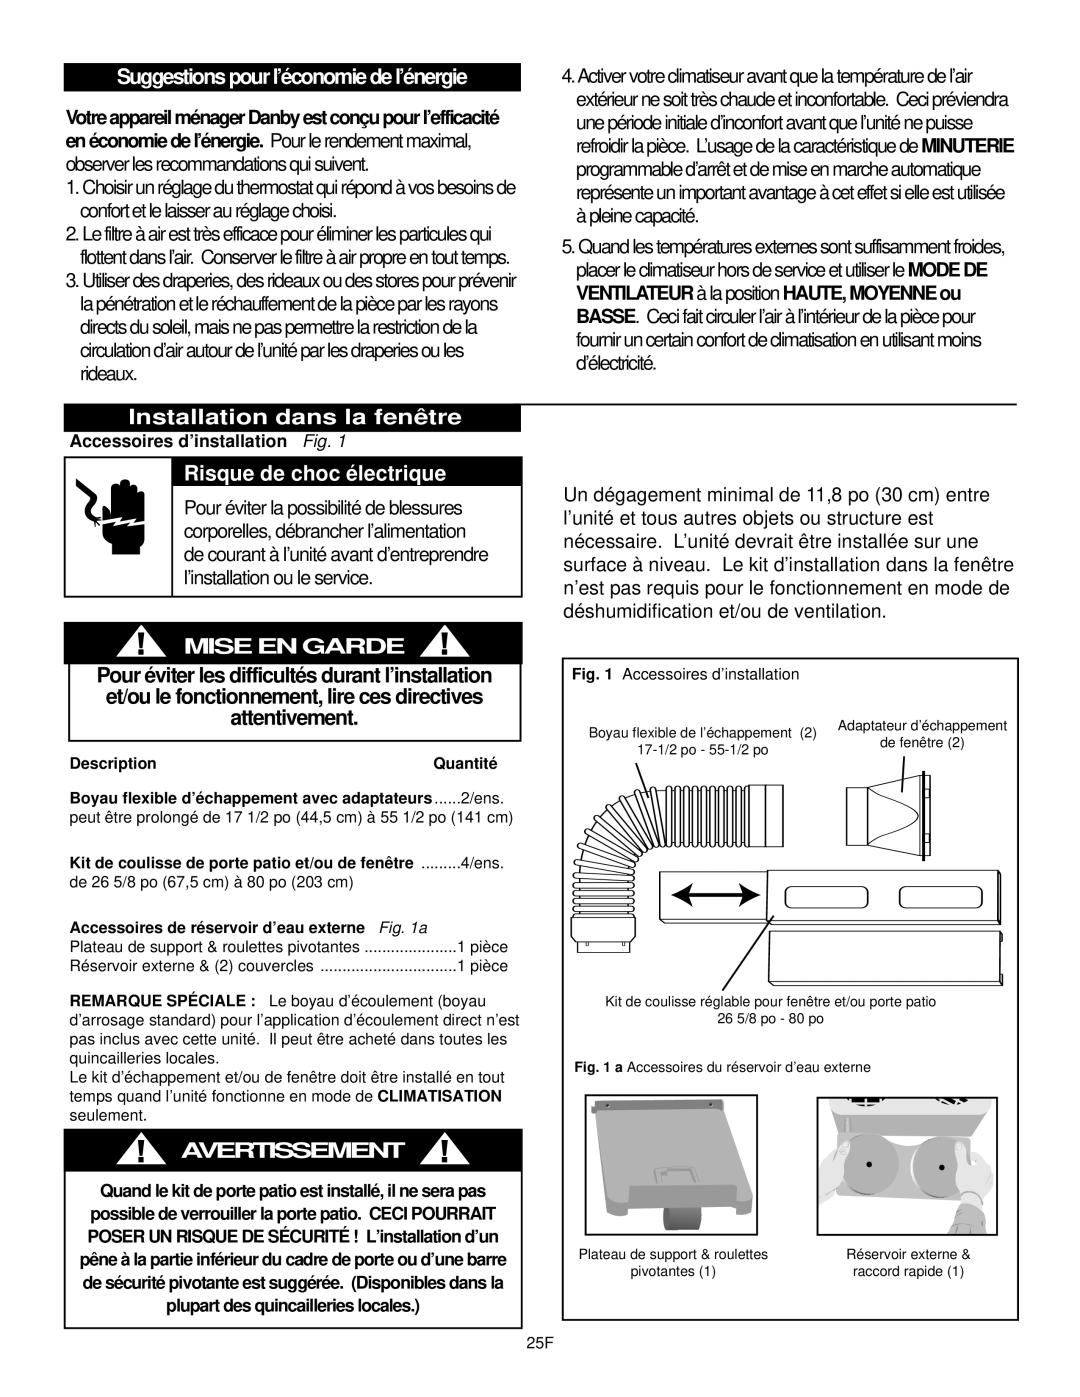 Danby DPAC9030 manual Suggestions pour l’économie de l’énergie, Installation dans la fenêtre, Risque de choc électrique 